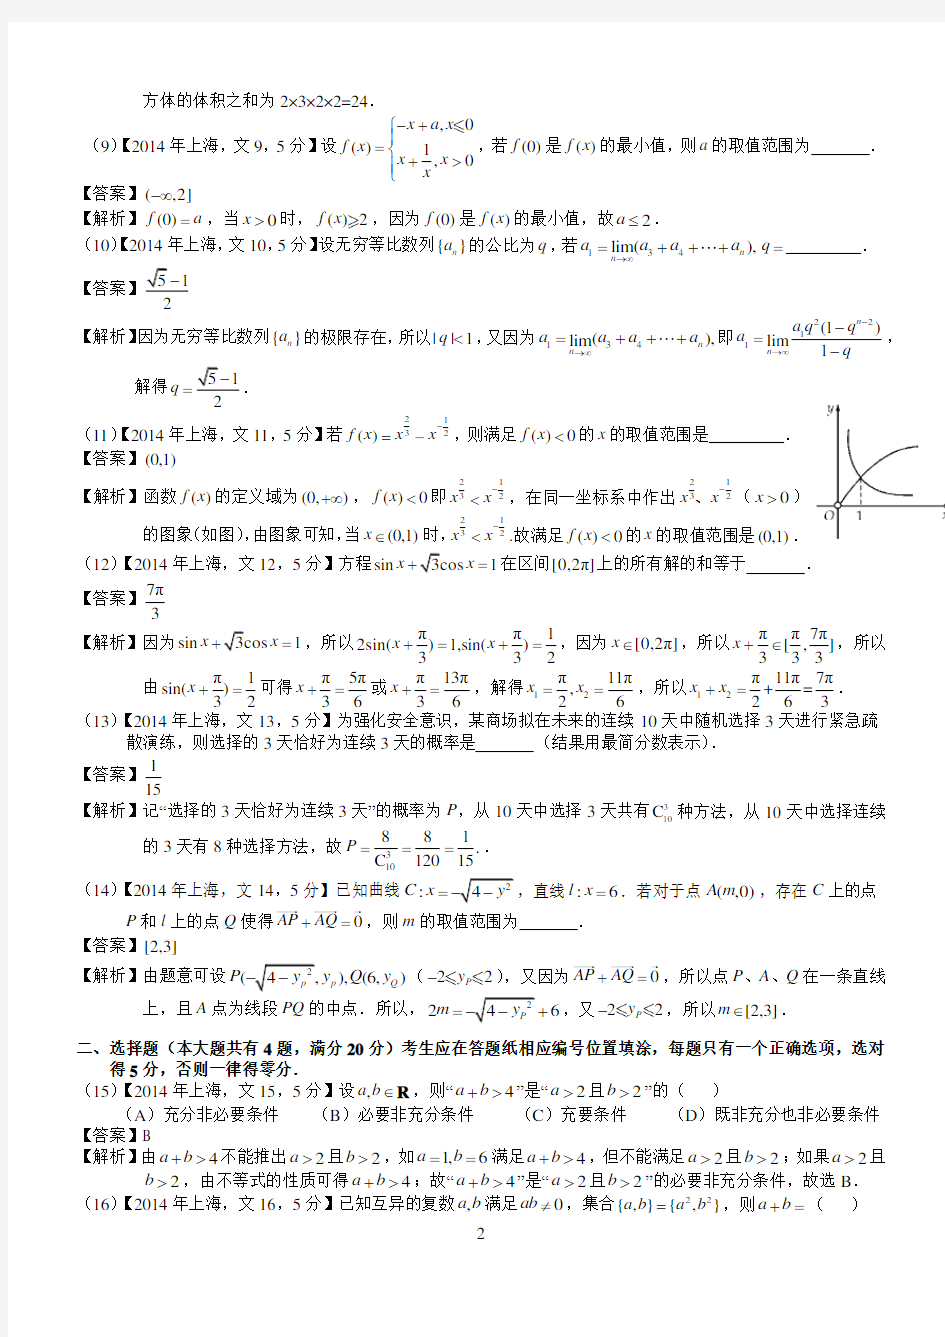 2014年高考上海文科数学试题及答案(word解析版)